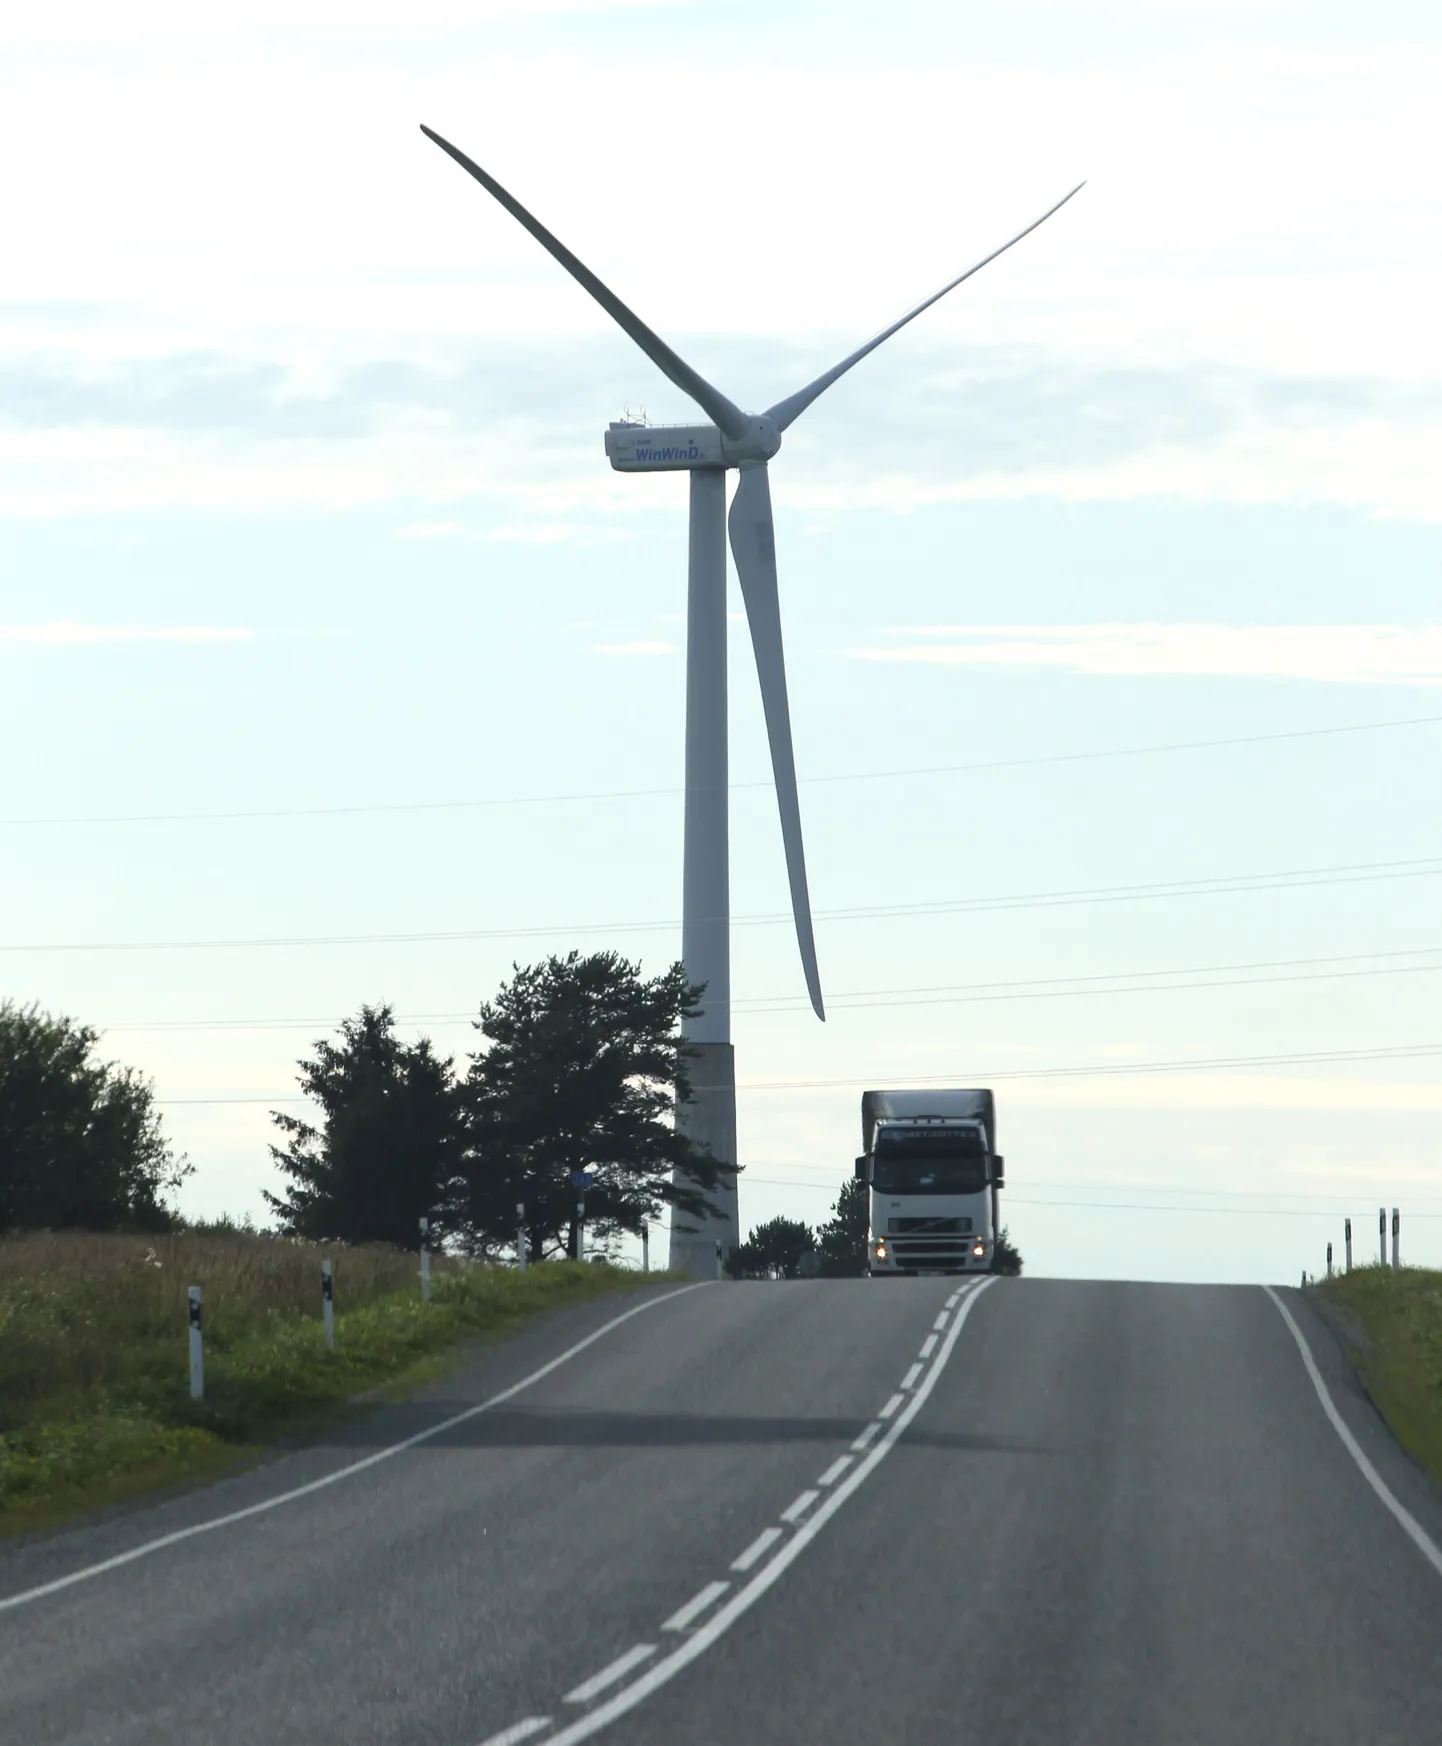 Hiinlased tahavad Eestis investeerida eelkõige puidupelletite ja tuuleenergia seadmete tootmisse.